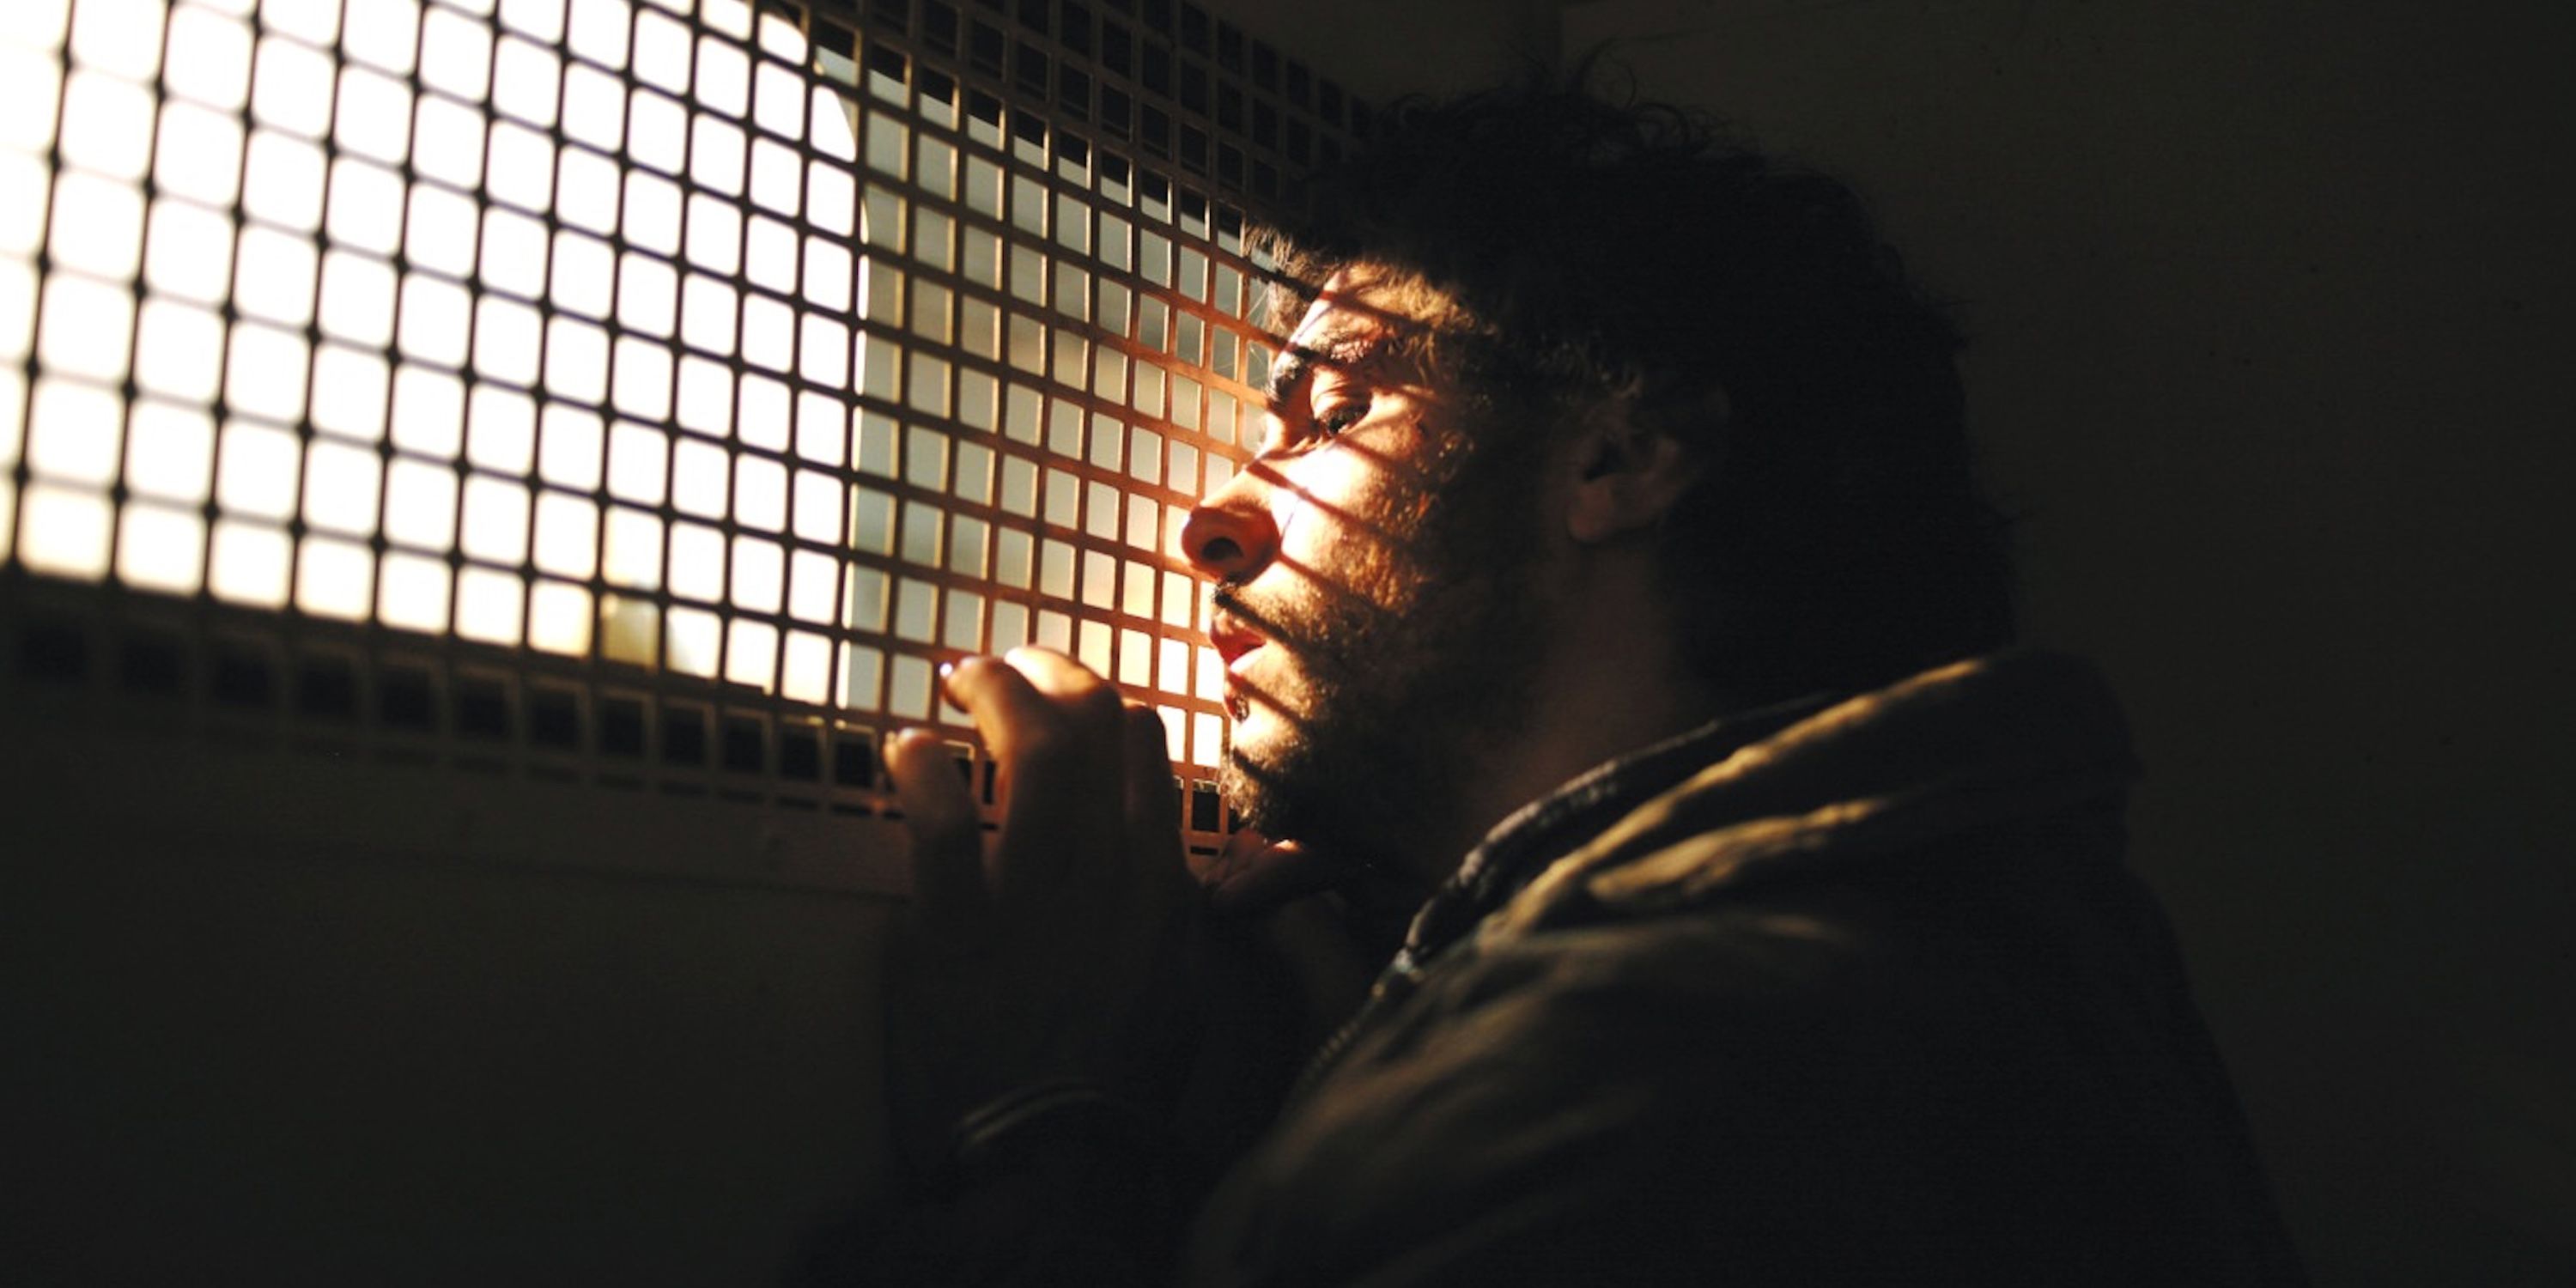 Malik El-Djebena in a prison cell in A Prophet